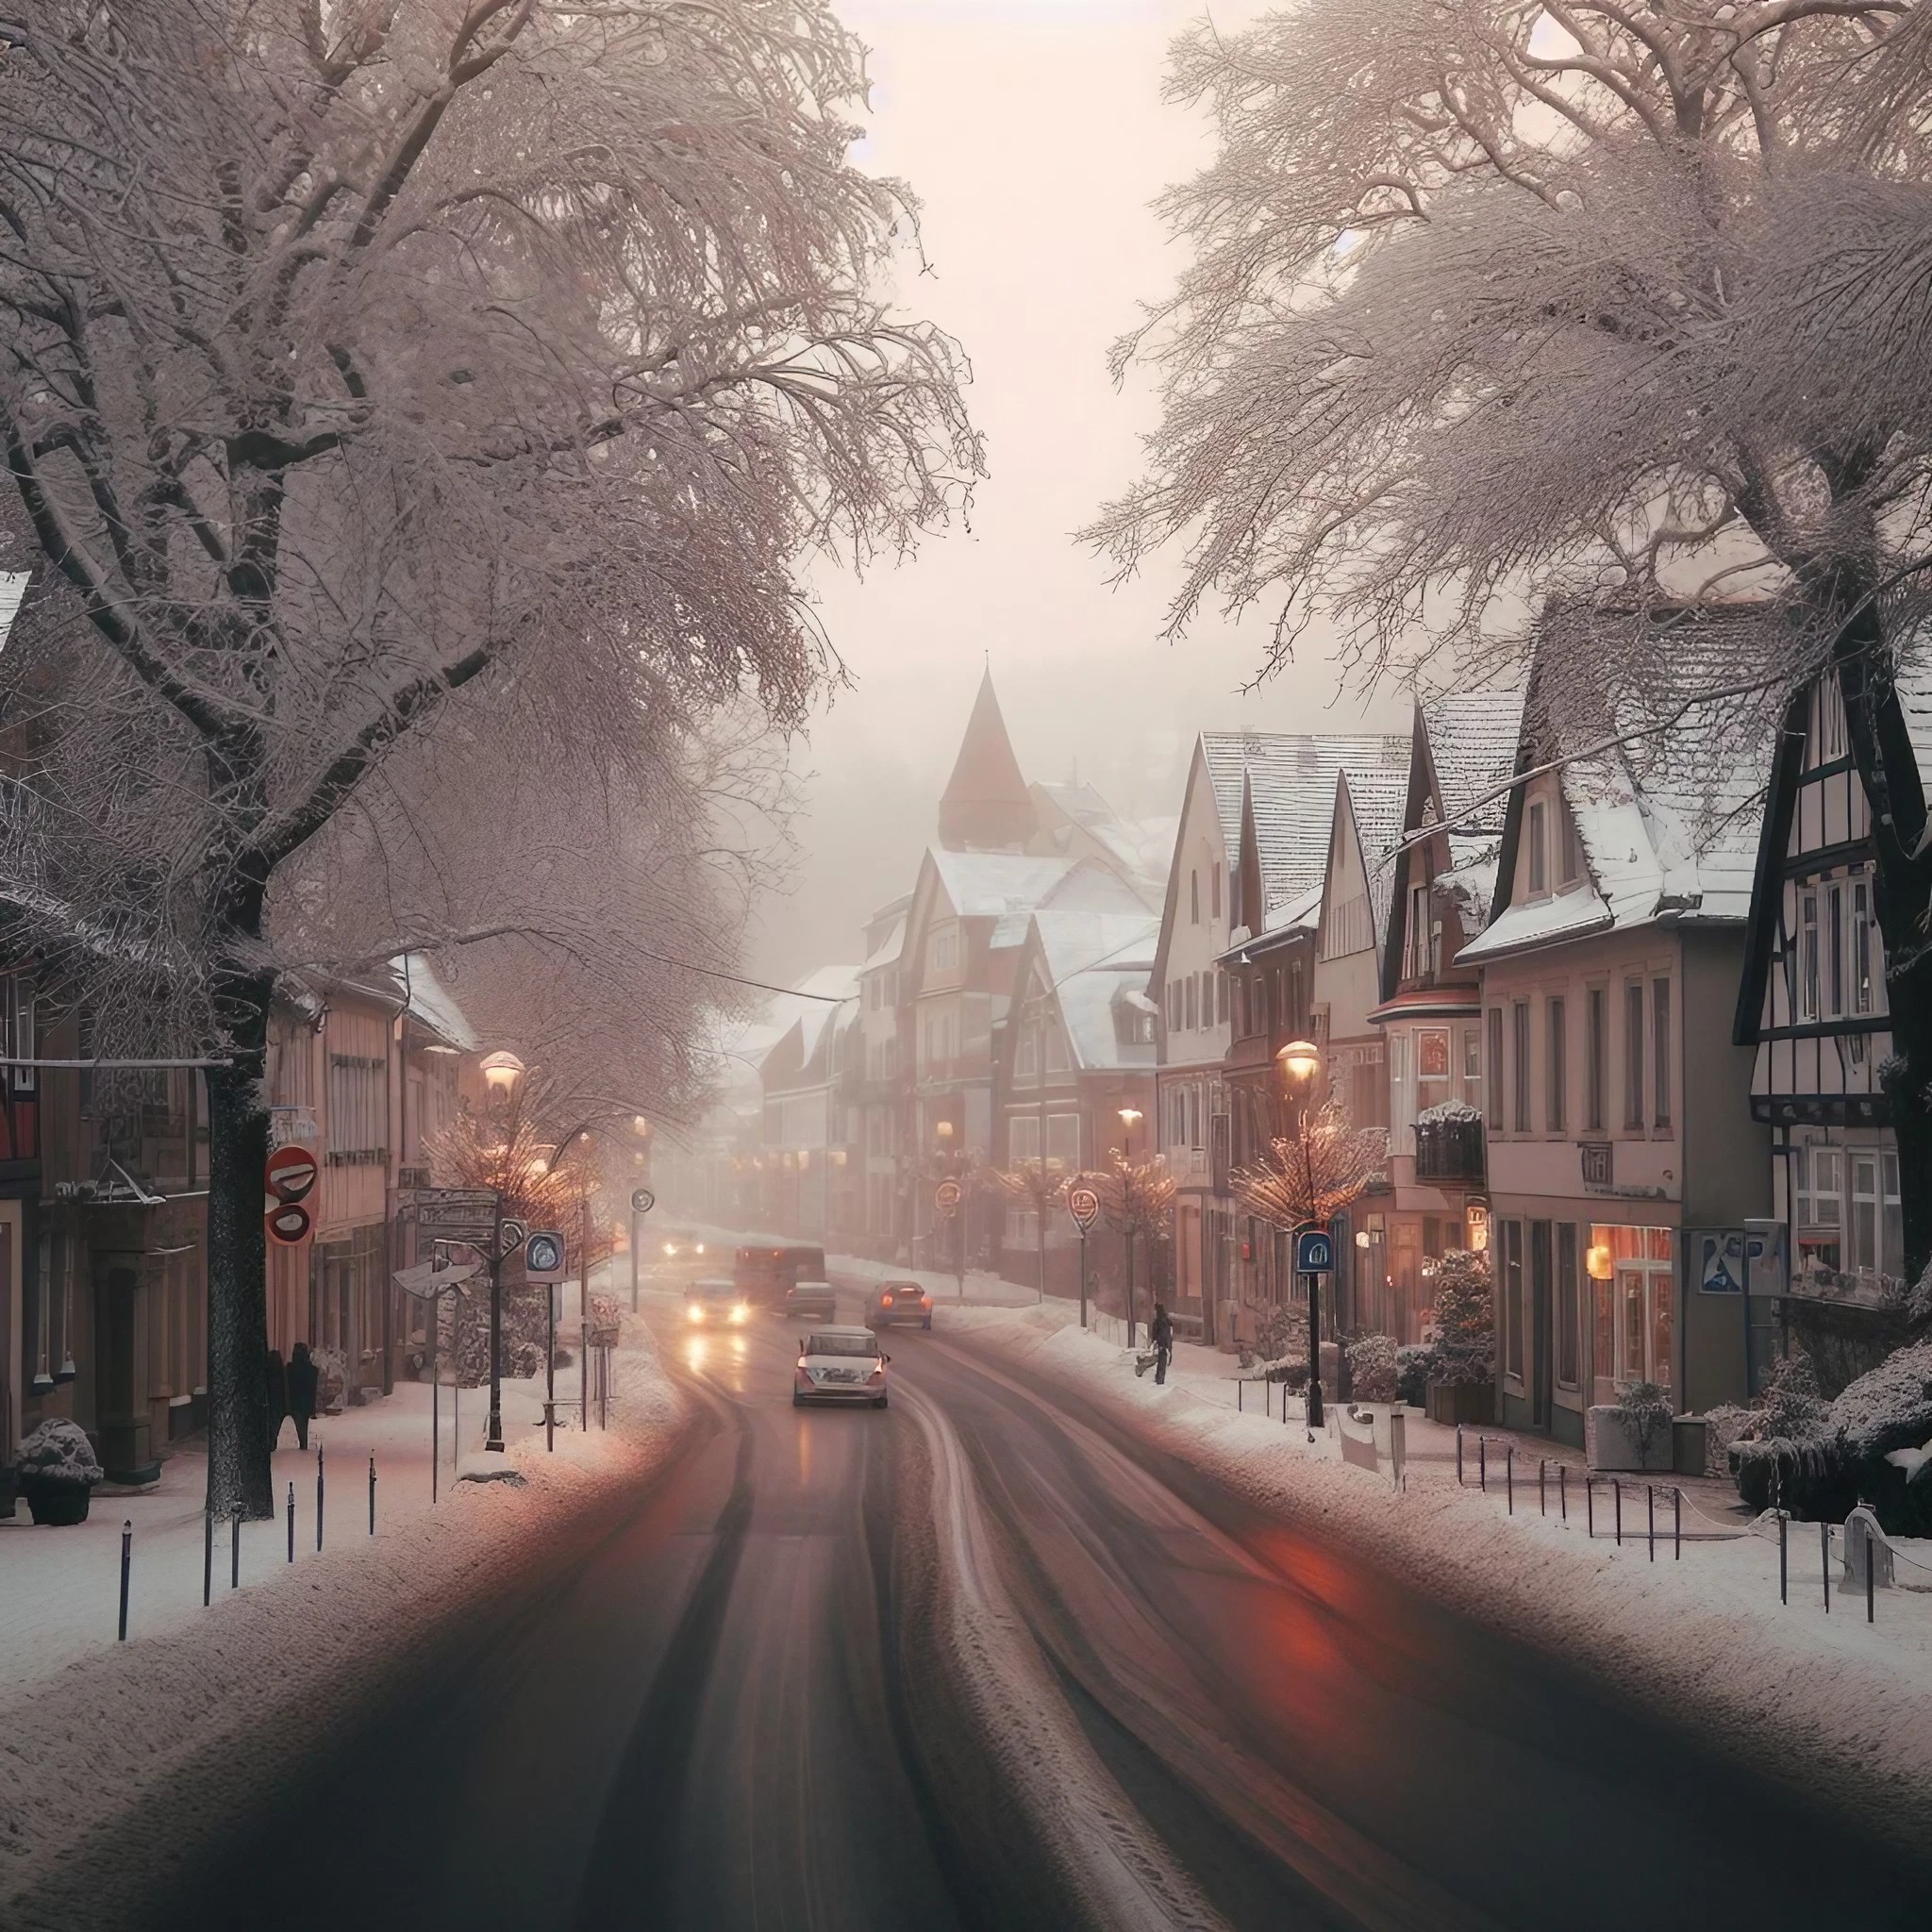 美しい冬のドイツの街並みと道路＆雪降る綺麗なヨーロッパの無料壁紙素材